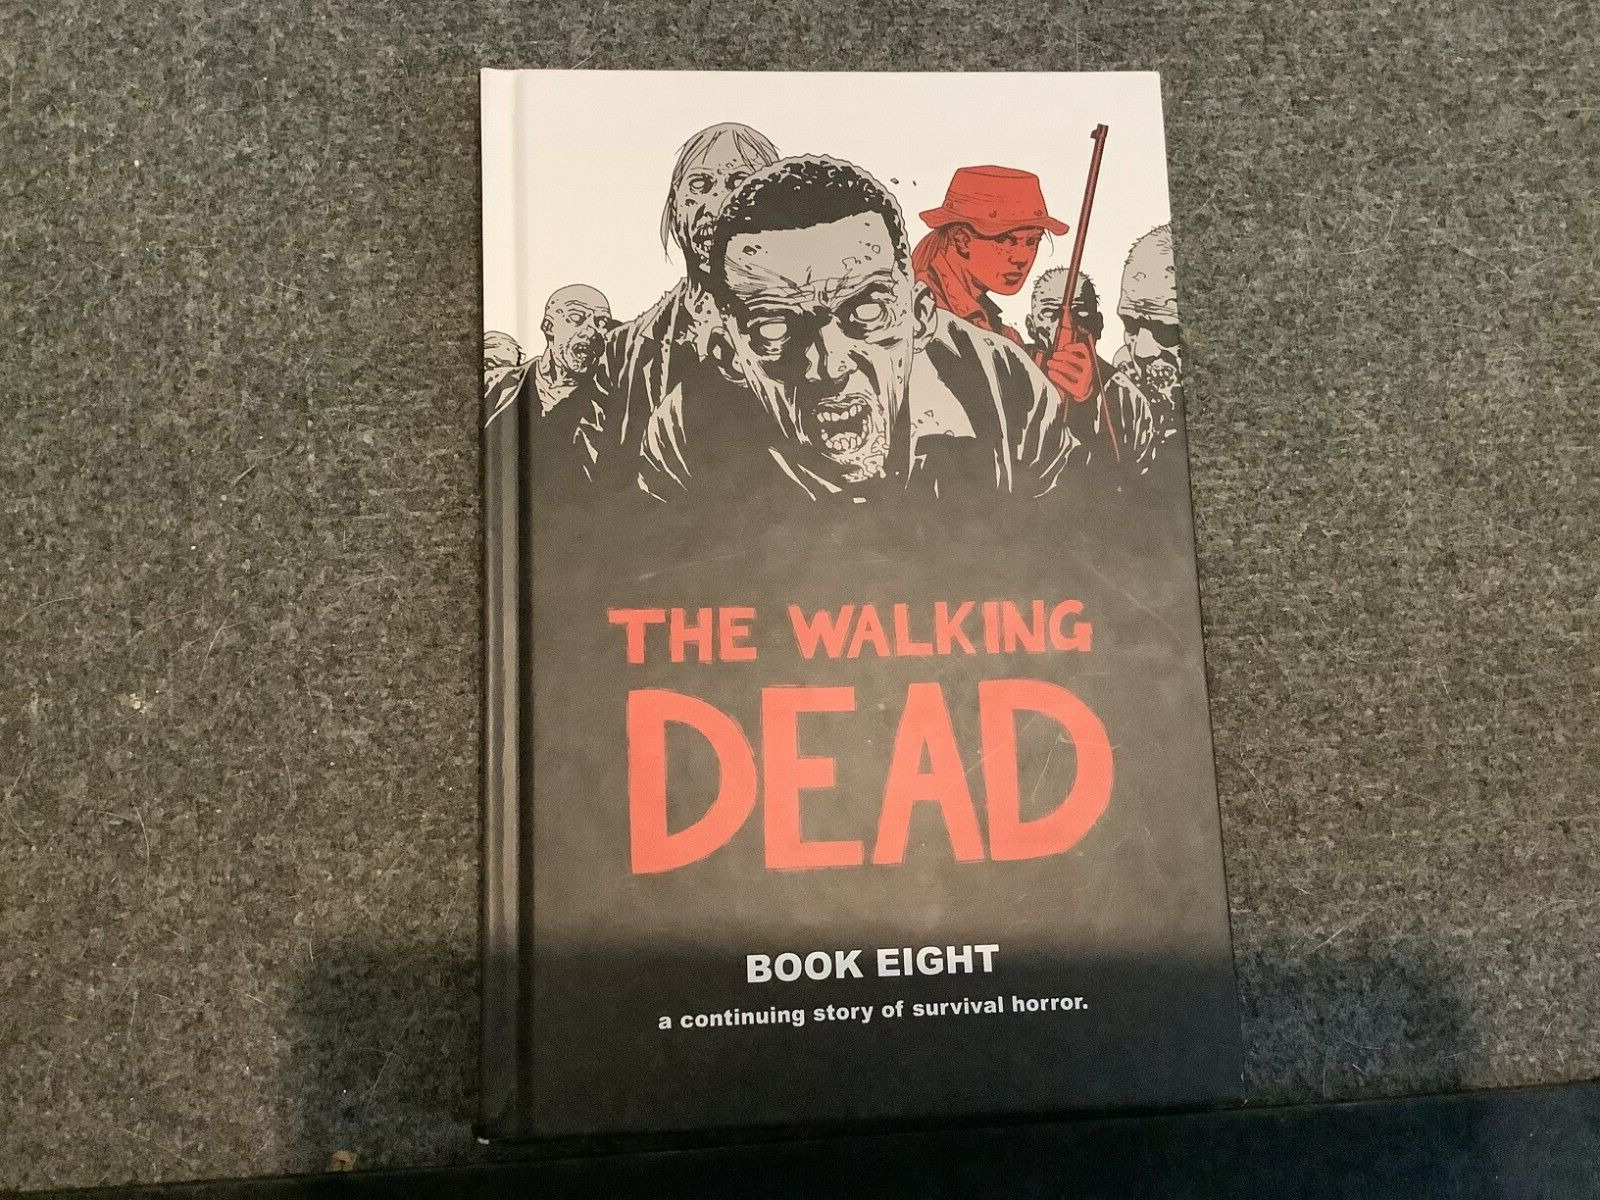 The Walking Dead Book 8 By Robert Kirkman